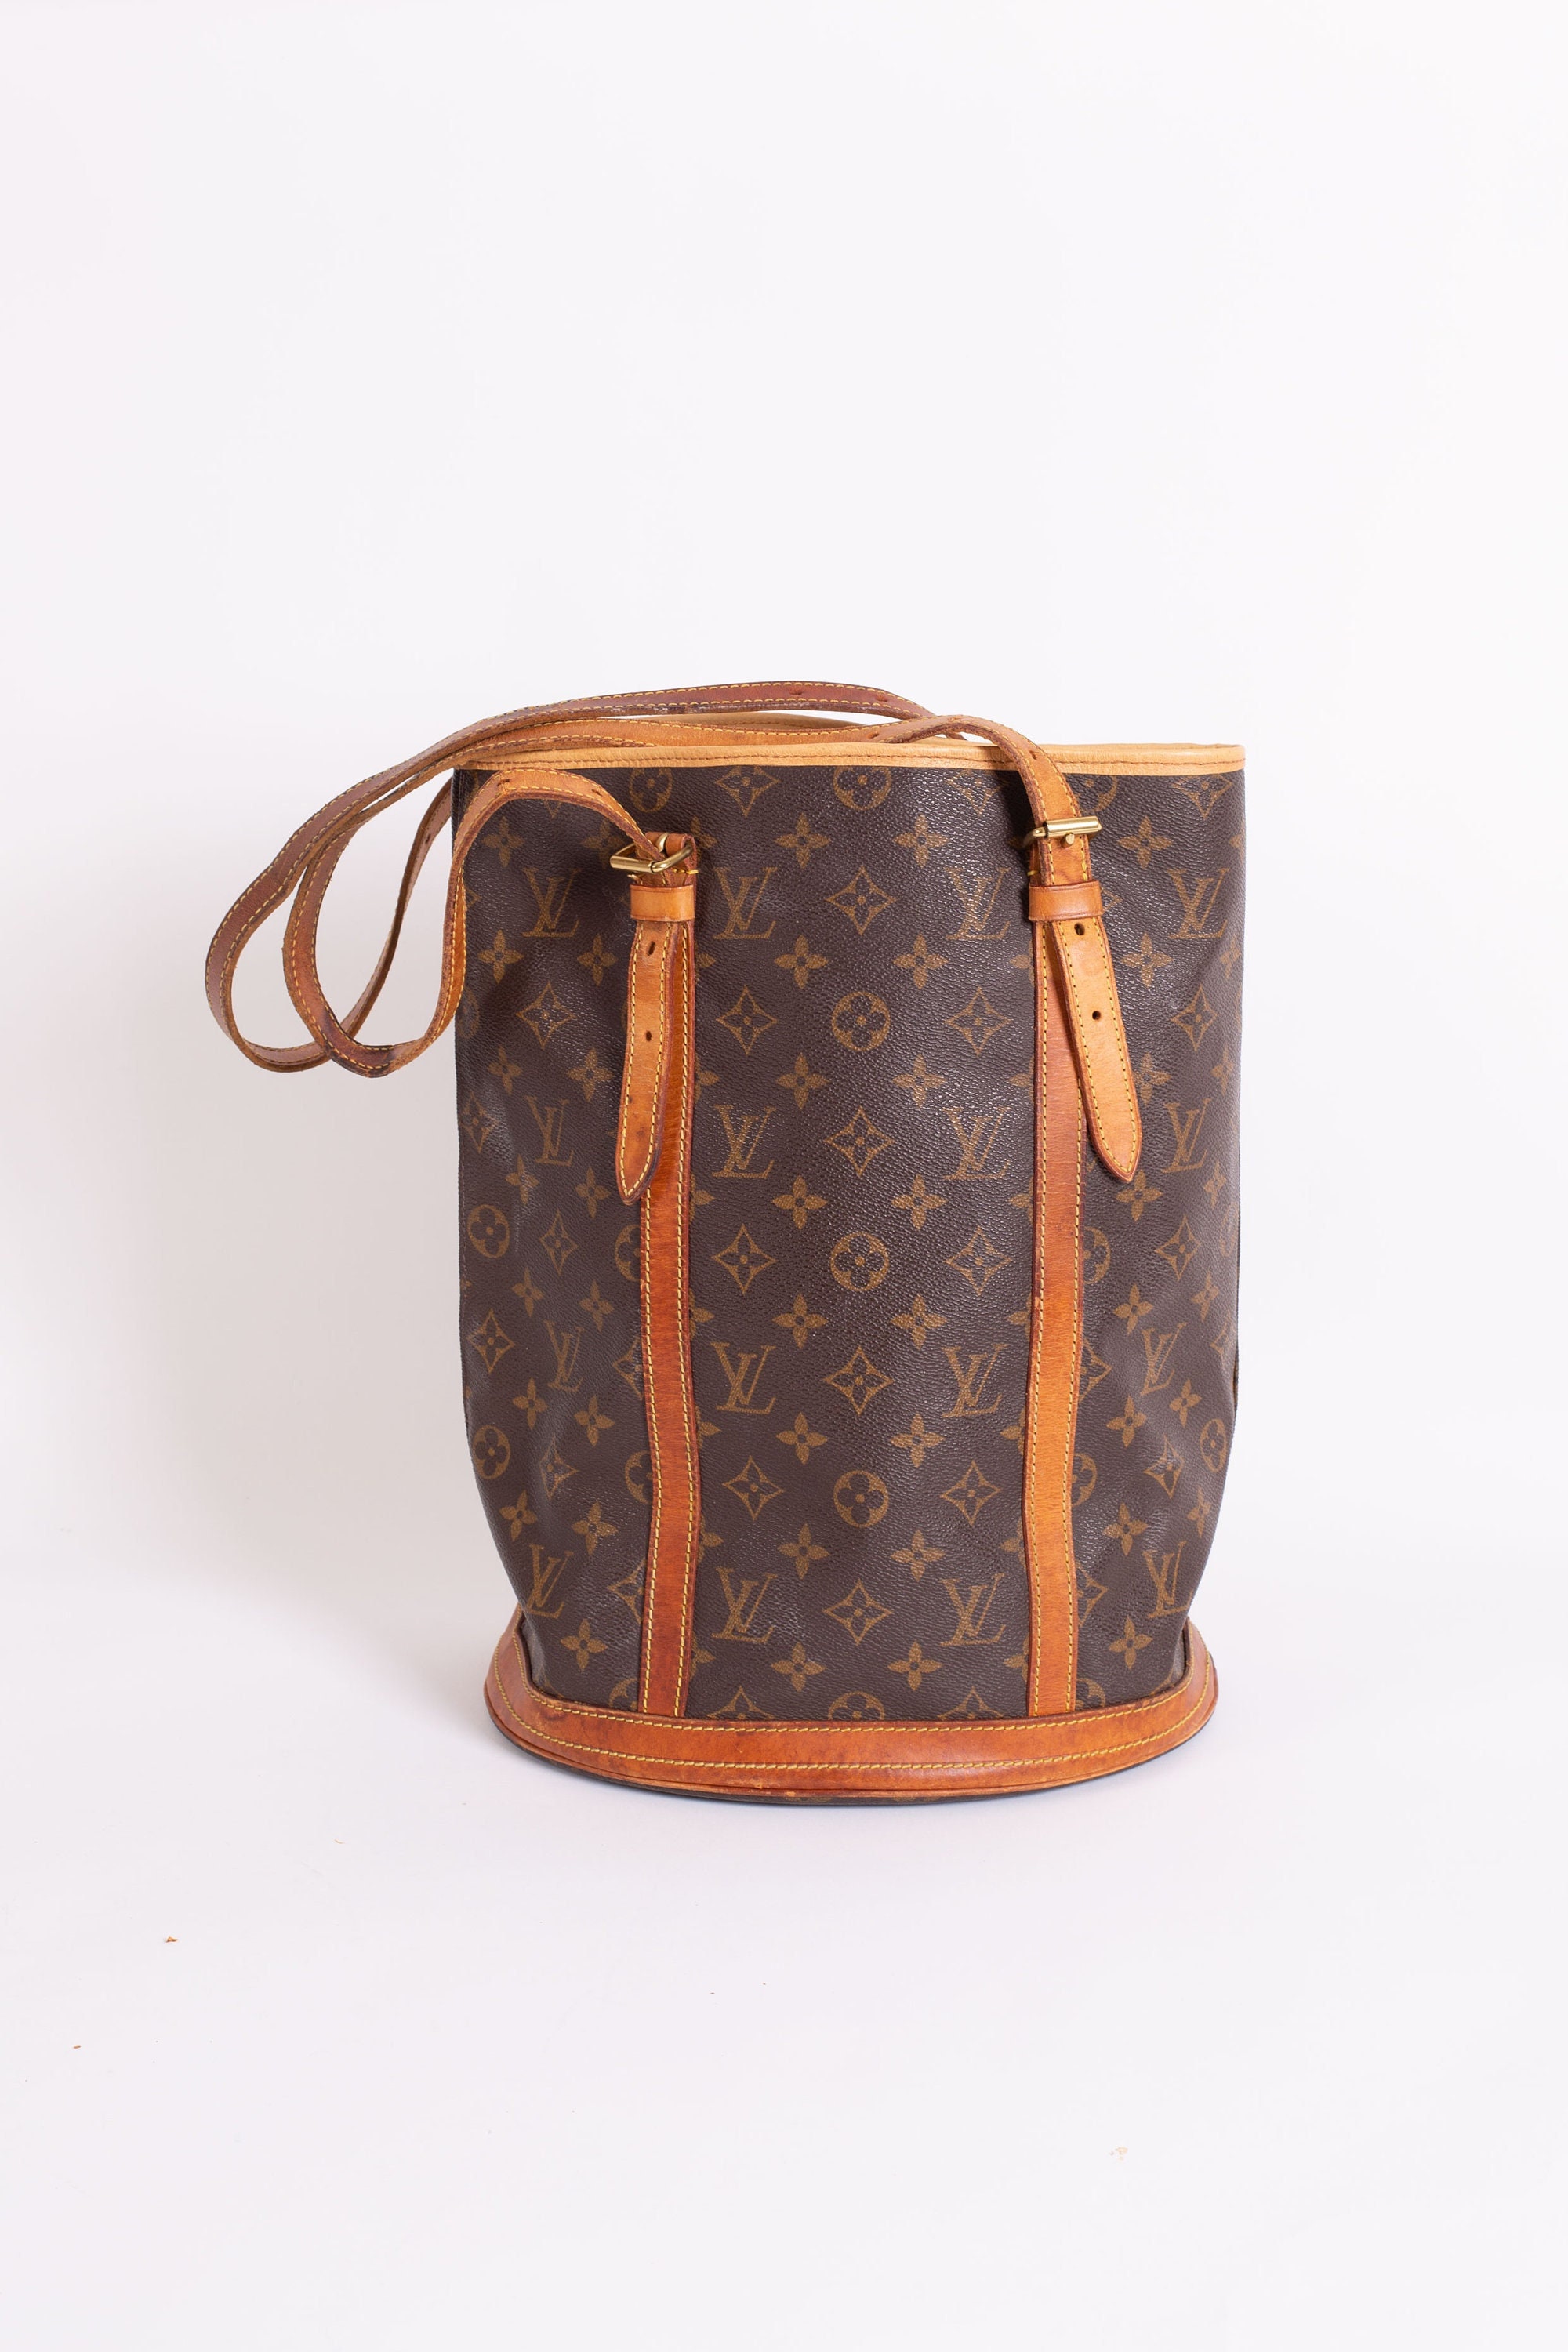 Louis Vuitton Vintage Monogram GM Bucket Bag Tote Carryall Noe 